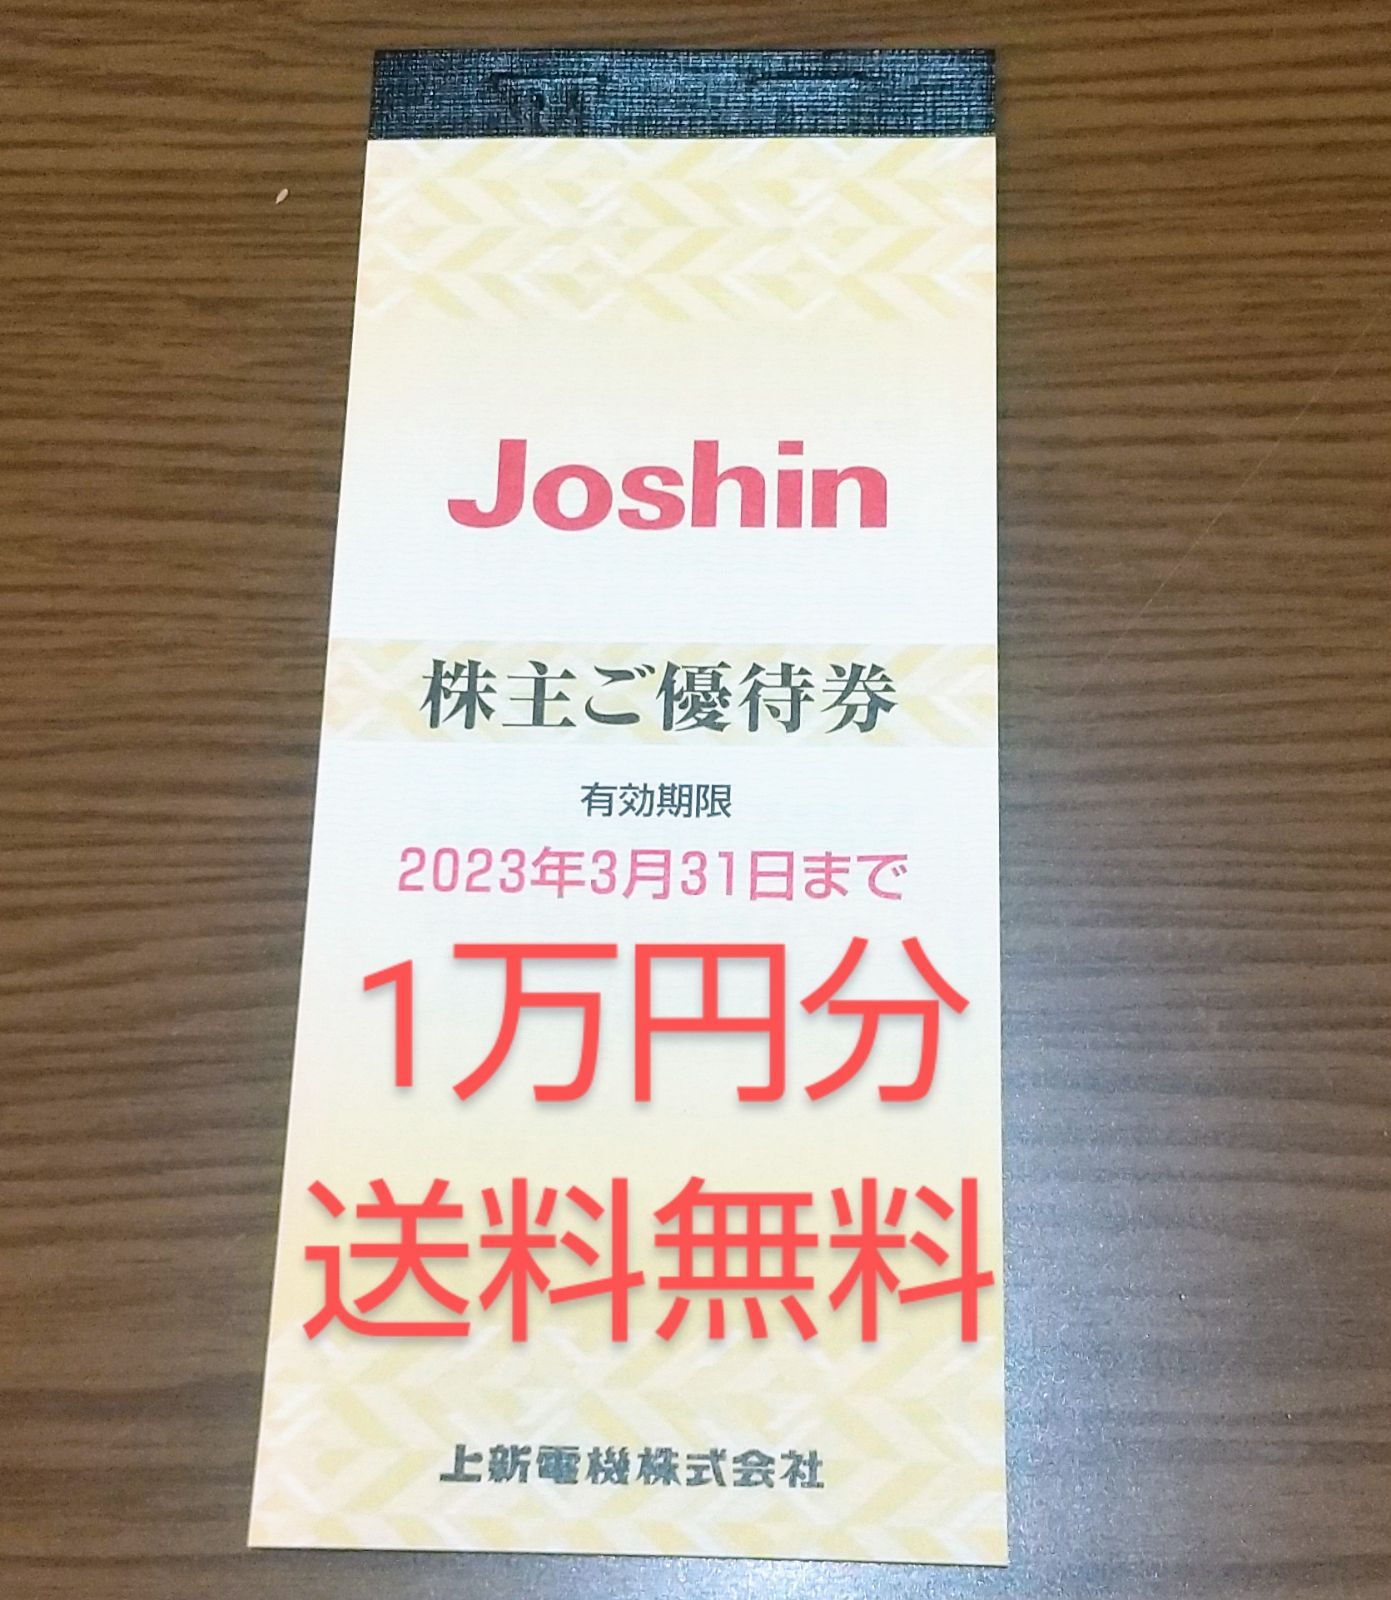 Joshin 株主優待 1200円 - 割引券